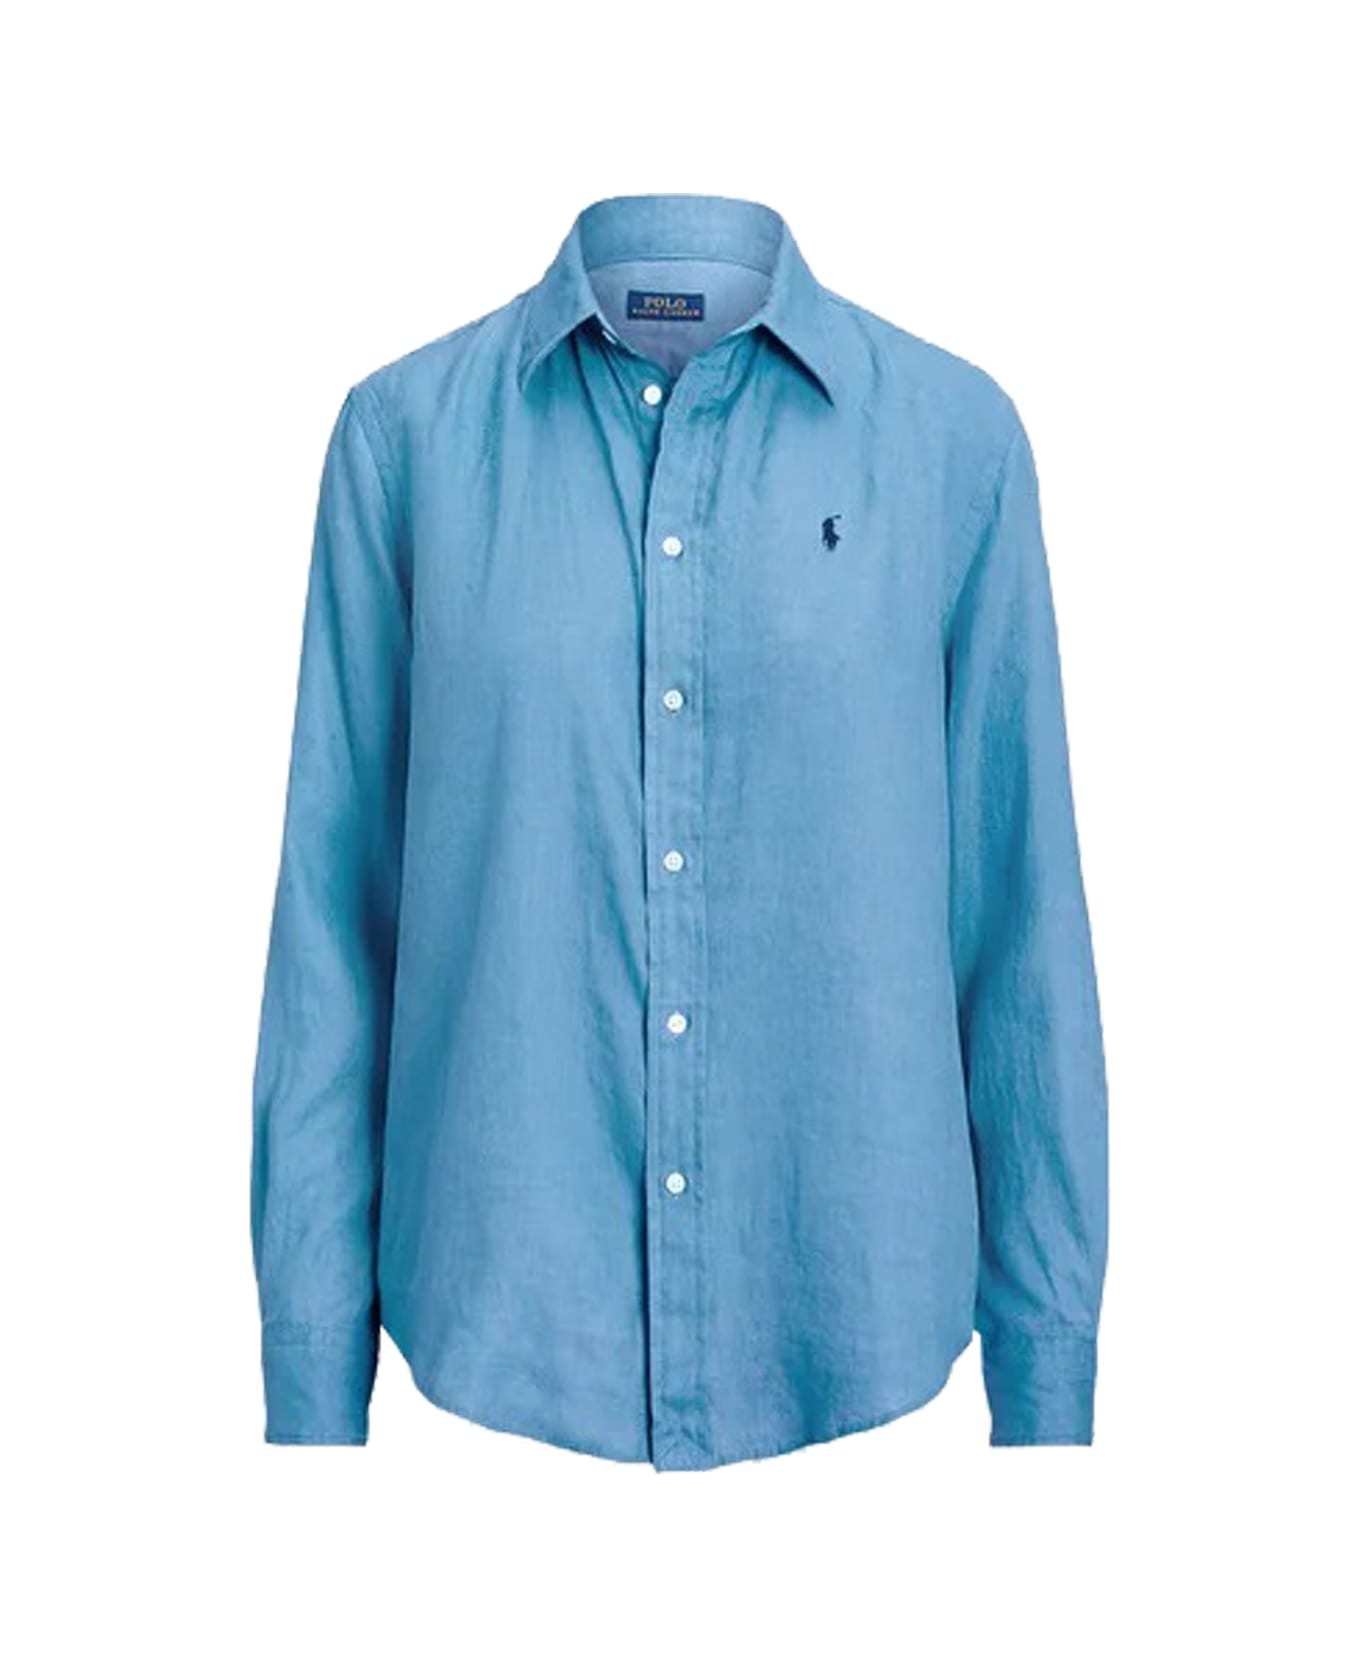 Polo Ralph Lauren Shirt - Blue シャツ